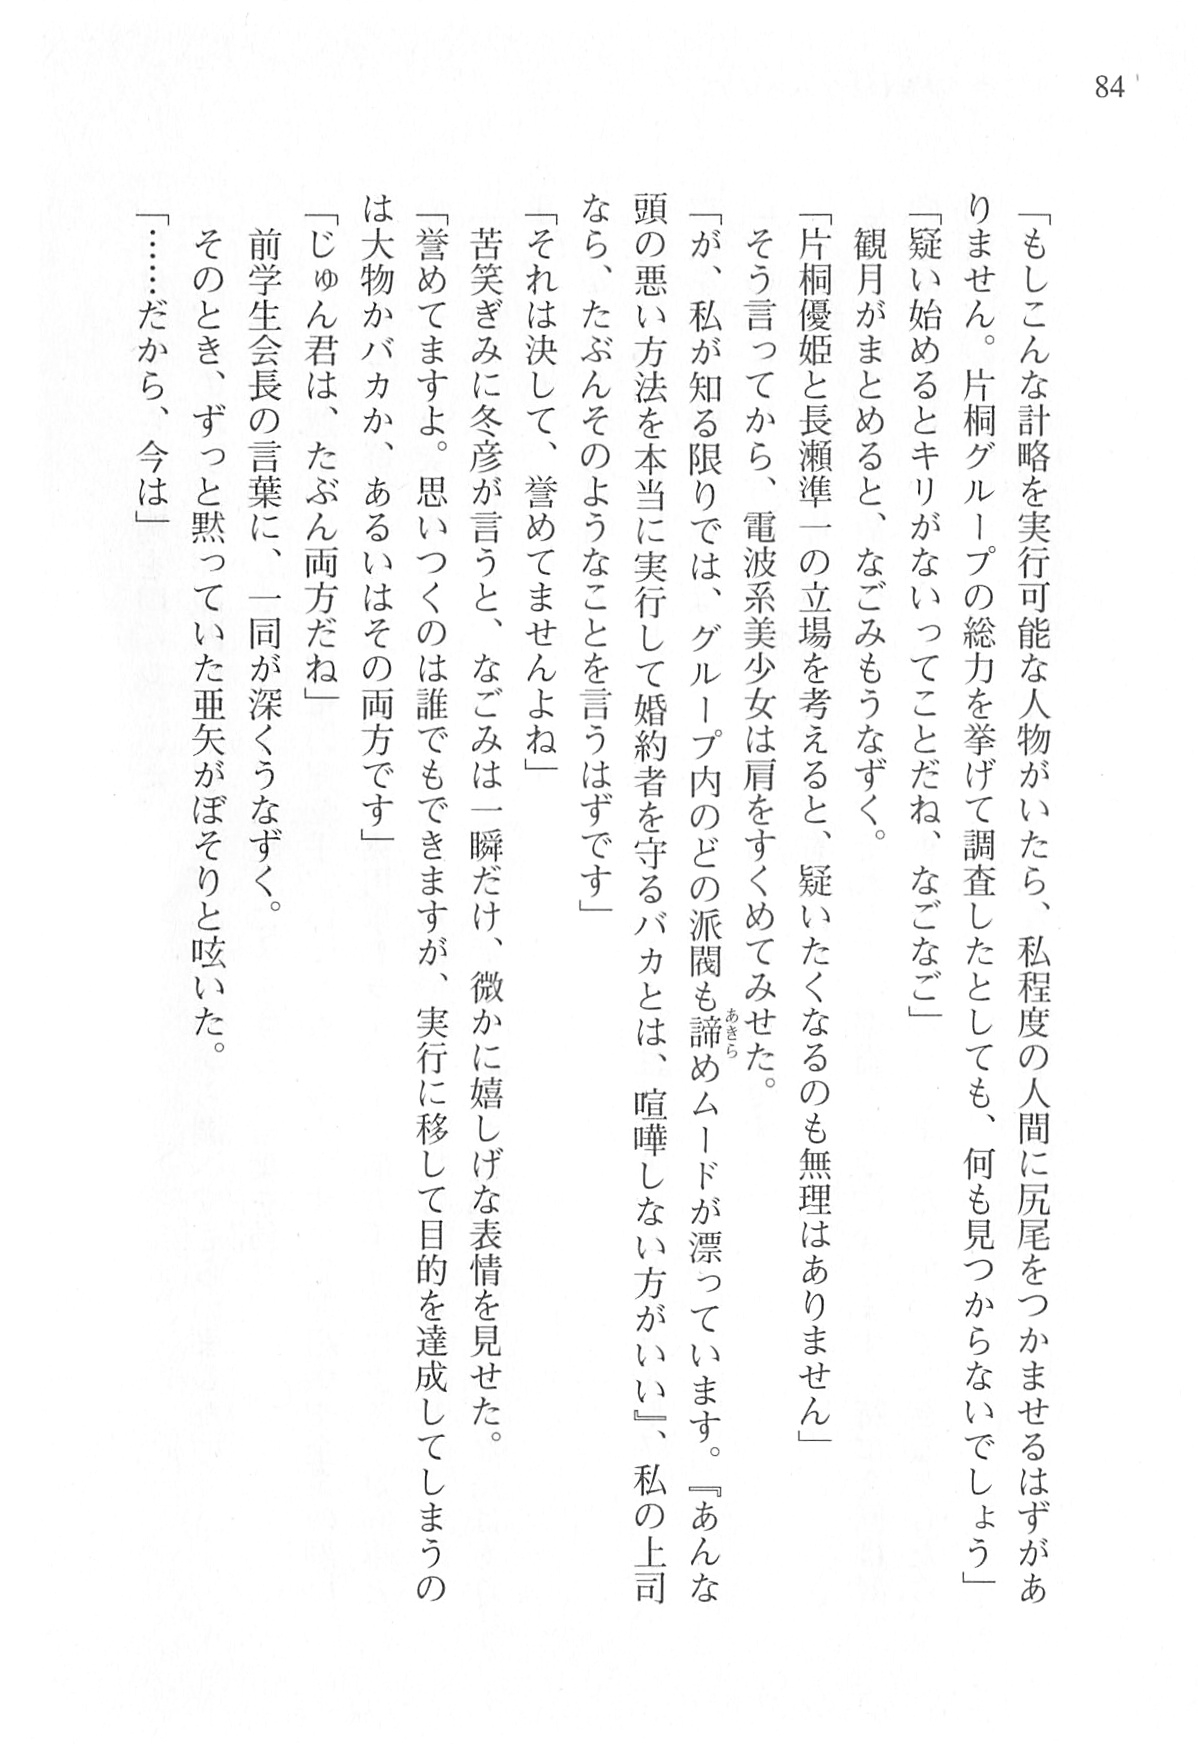 [Shinji Mao, Pierre Yoshio] Akaneiro ni Somaru Saka - Katagiri Yuuhi no Koiiro 84